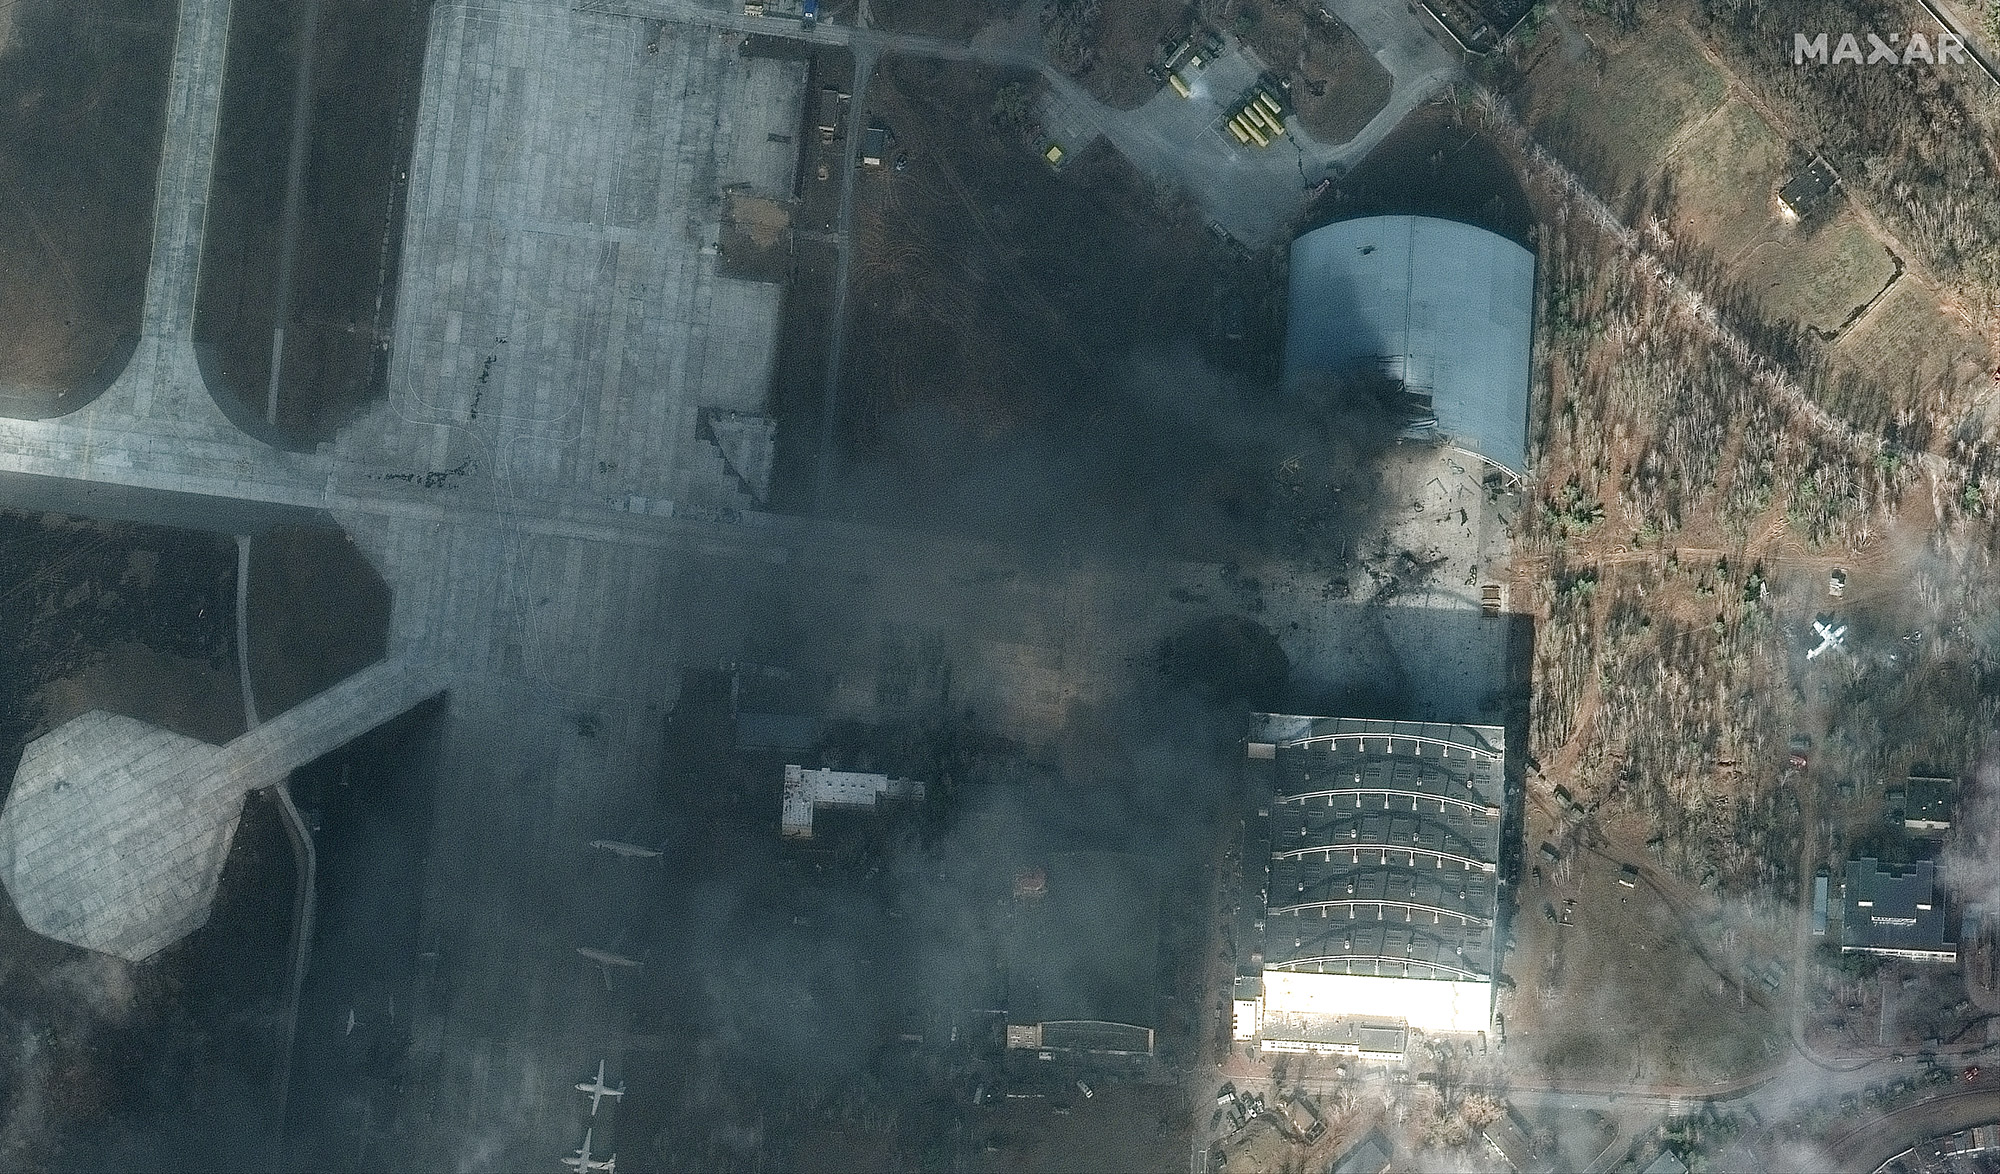 Chiếc máy bay lớn nhất thế giới bị phá huỷ tại căn cứ không quân Ukraine - Ảnh 2.